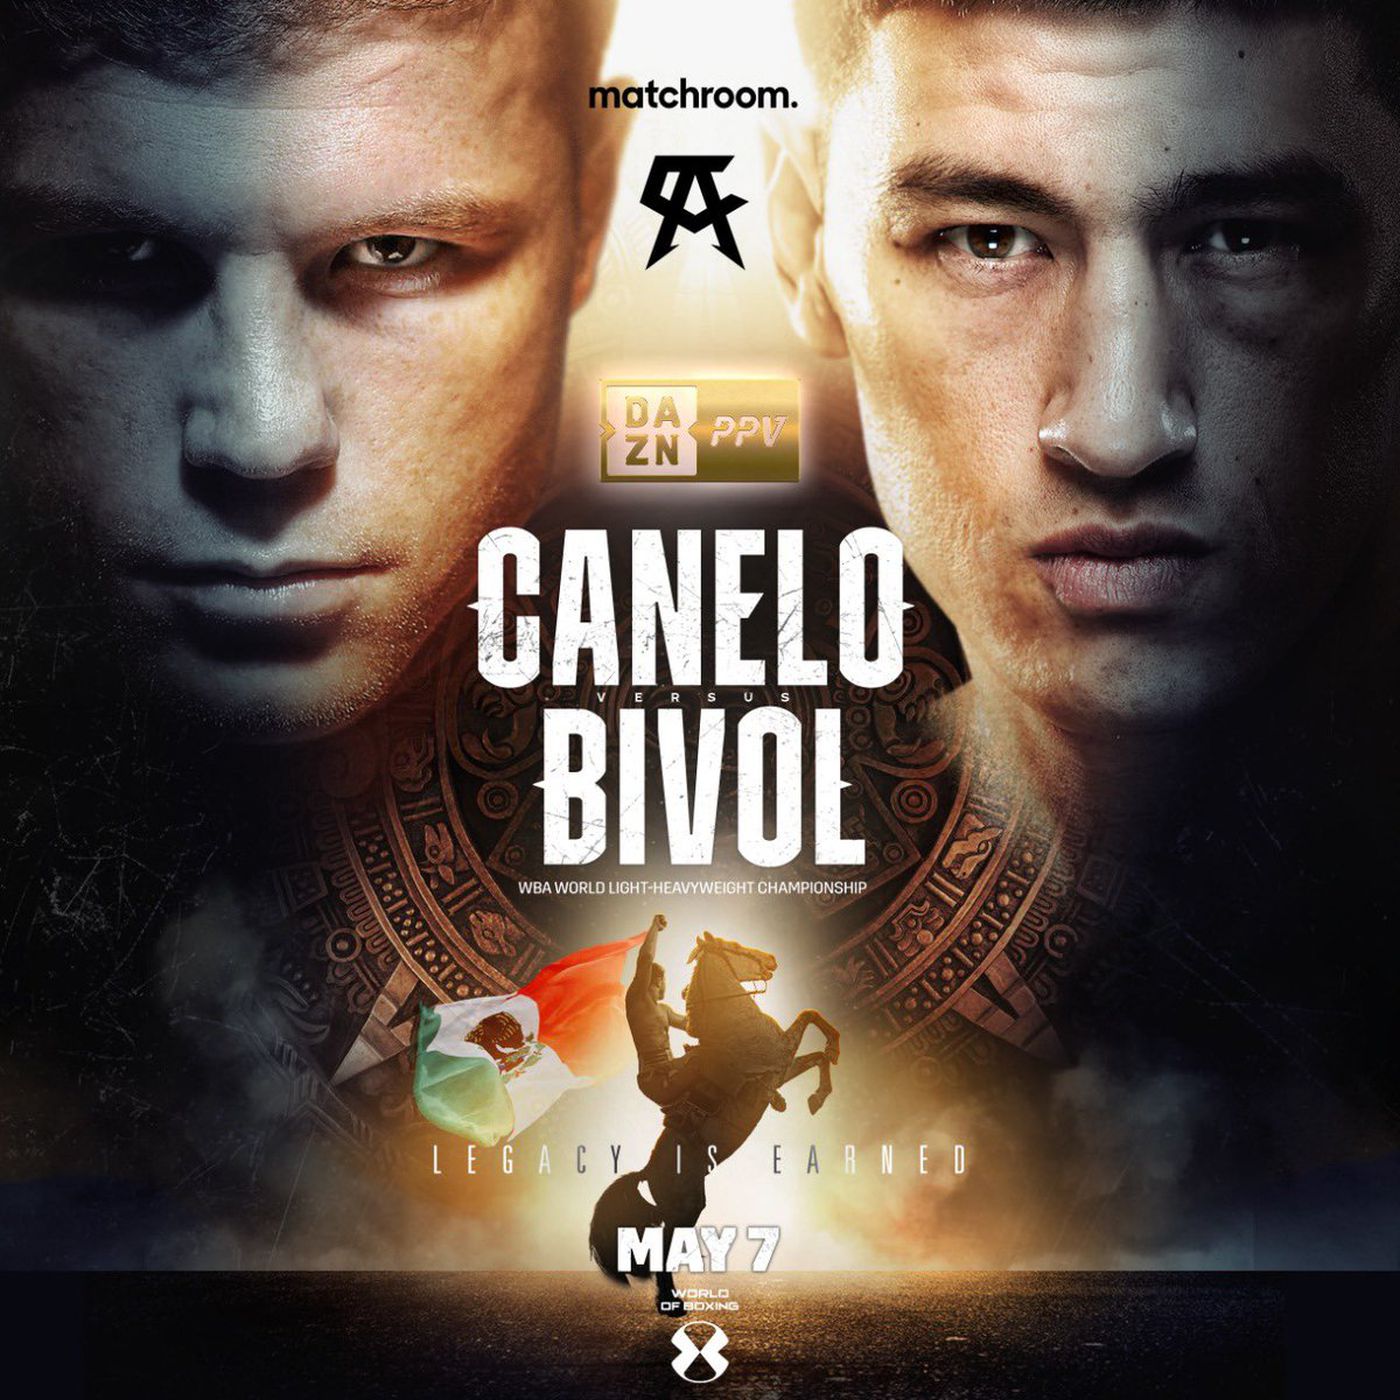 Posters Predict Canelo Álvarez vs Dmitry Bivol